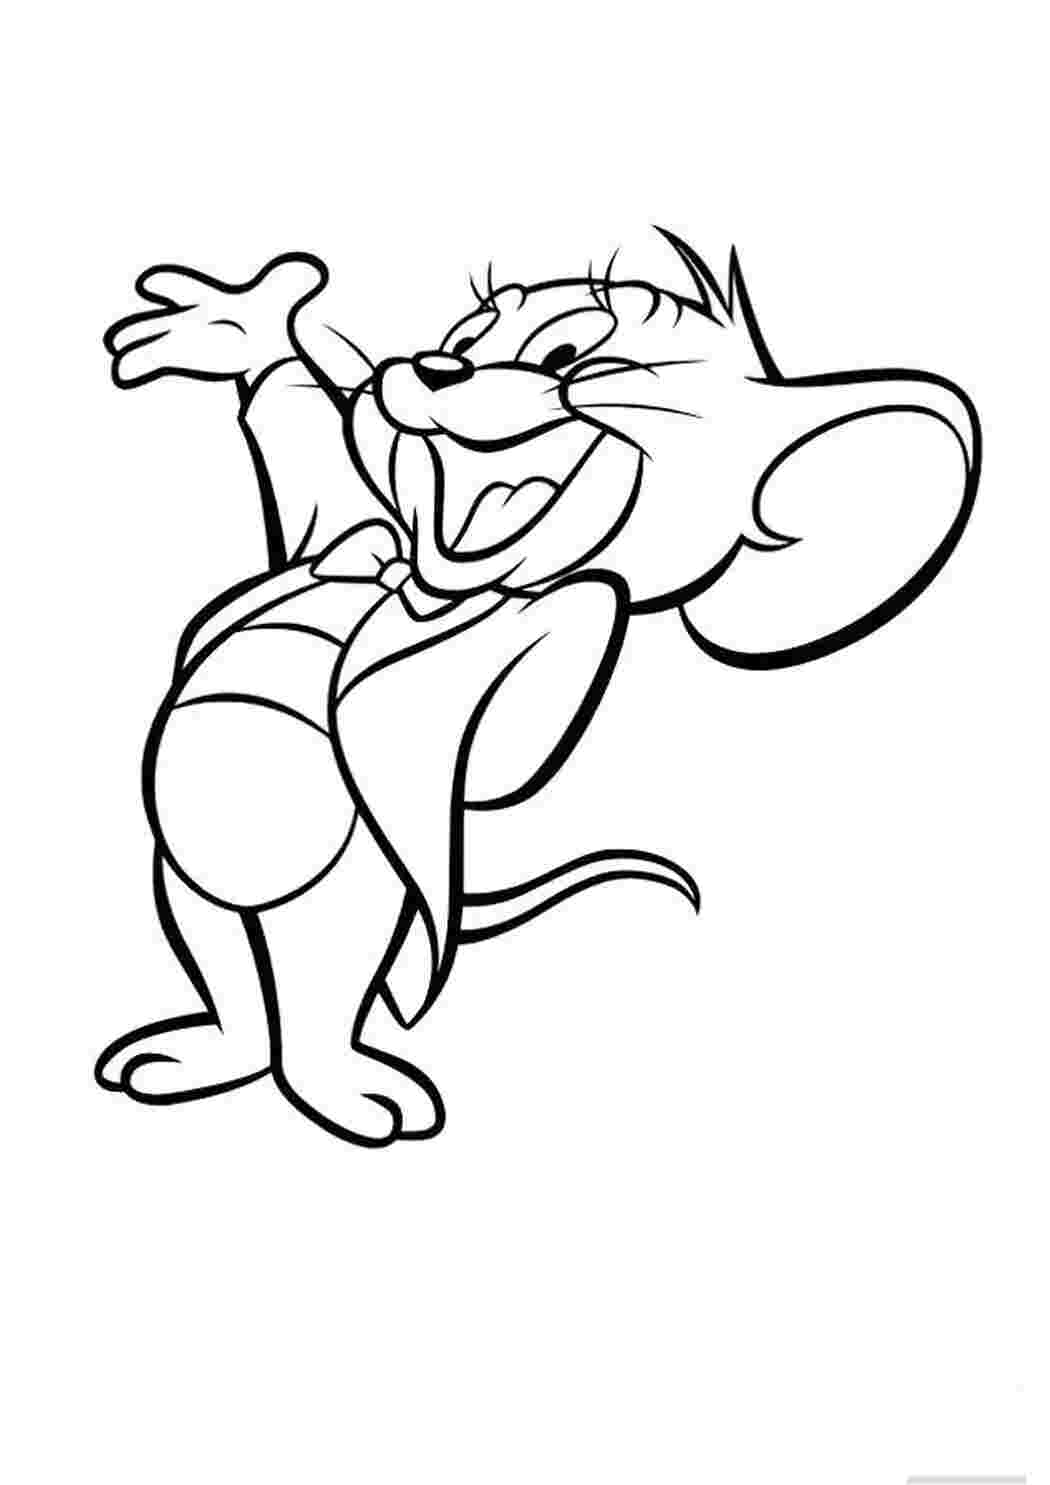 Джерри мышь раскраска